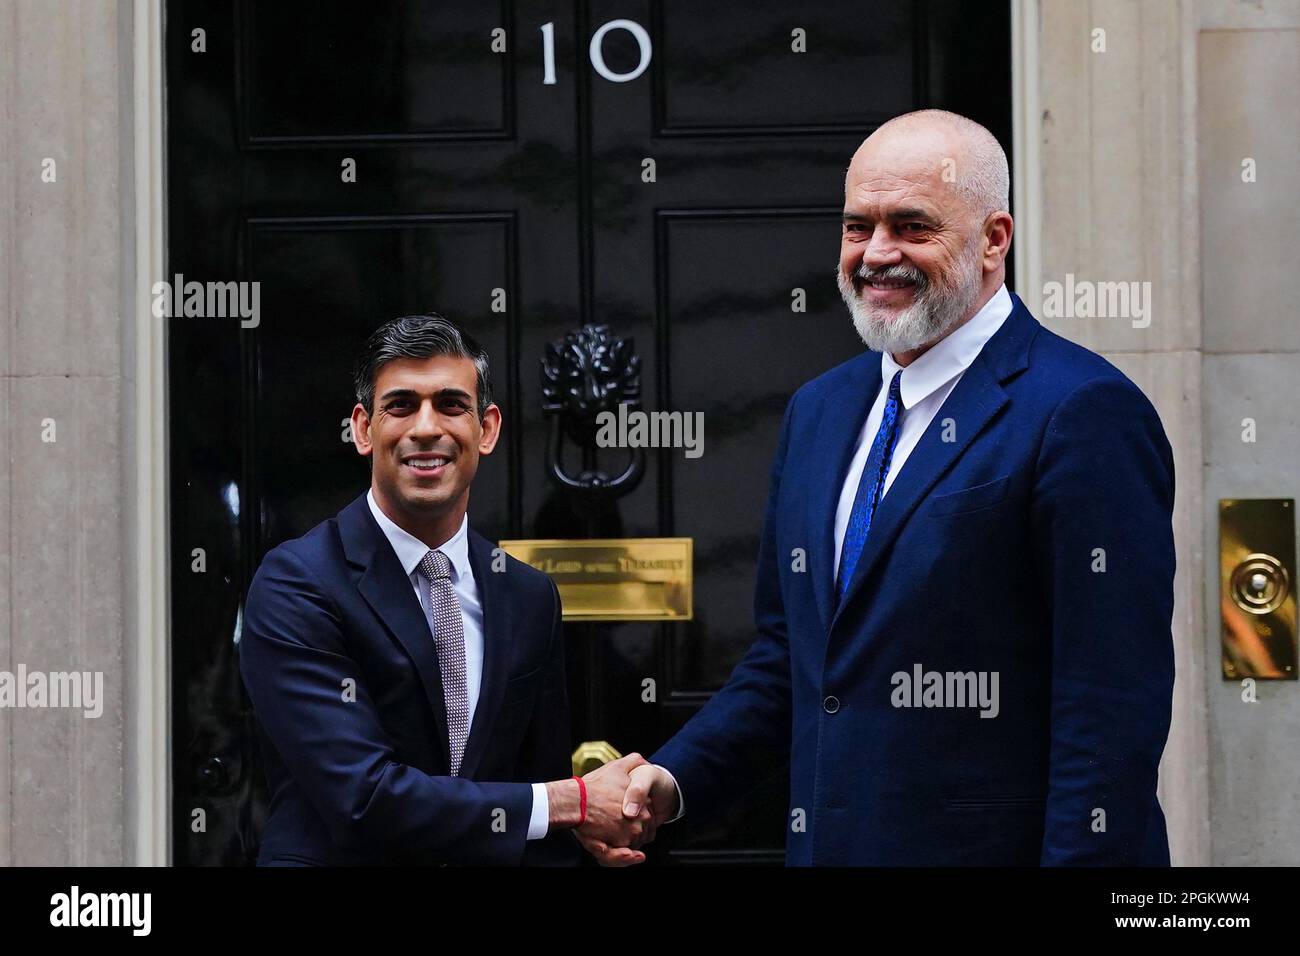 Le Premier ministre Rishi Sunak (à gauche) accueille le Premier ministre albanais EDI Rama au 10 Downing Street, à Londres, avant leur réunion. Banque D'Images